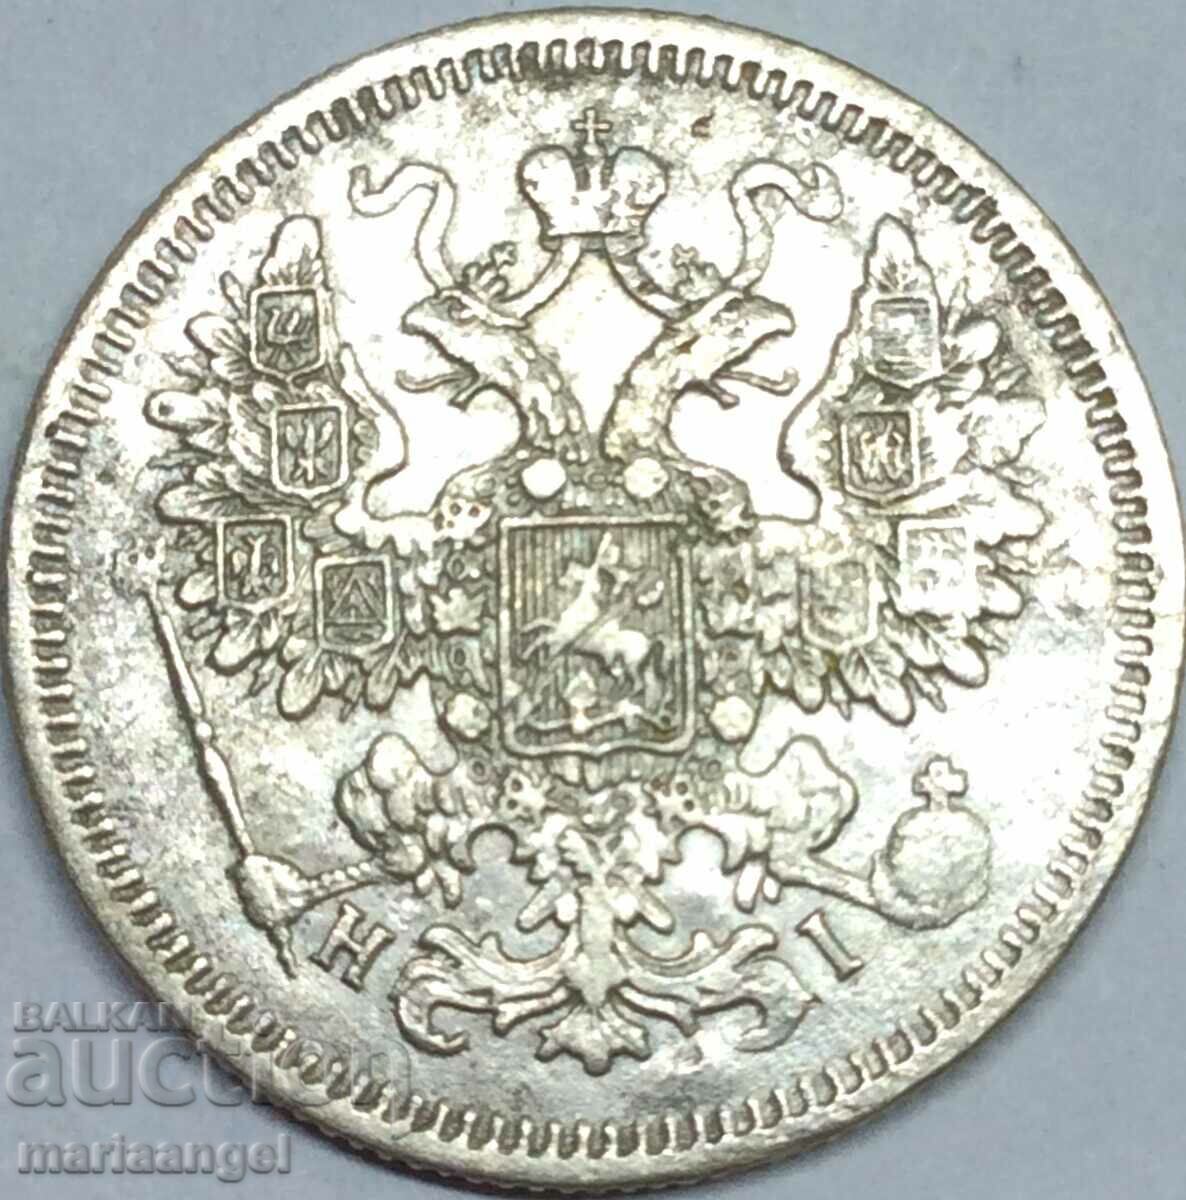 15 kopecks 1870 HI Russia silver - quite rare